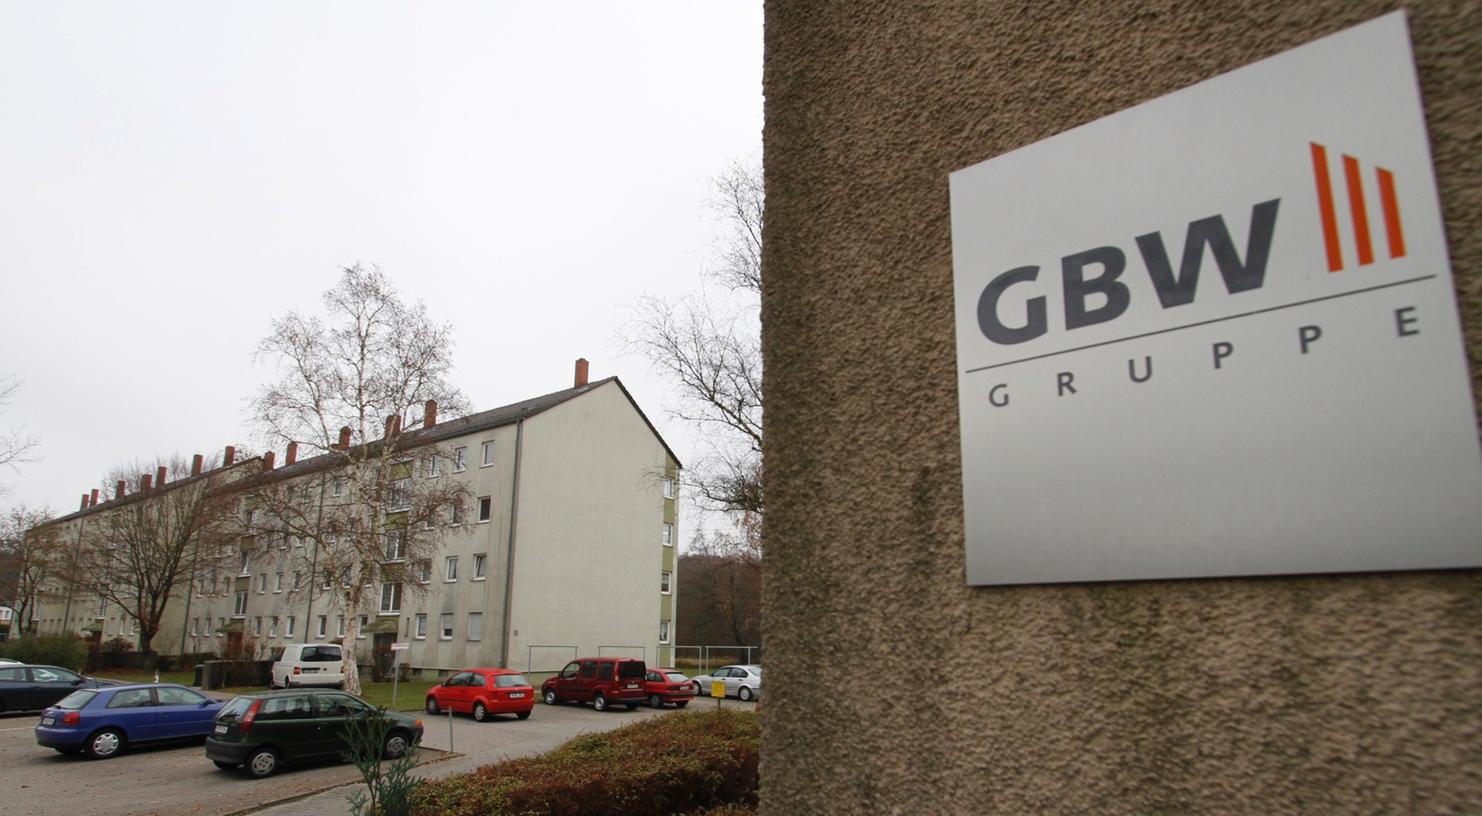 Mieterbund und Politiker kritisieren die Methoden der Gemeinnützigen Bayerischen Wohnungsgesellschaft (GBW).